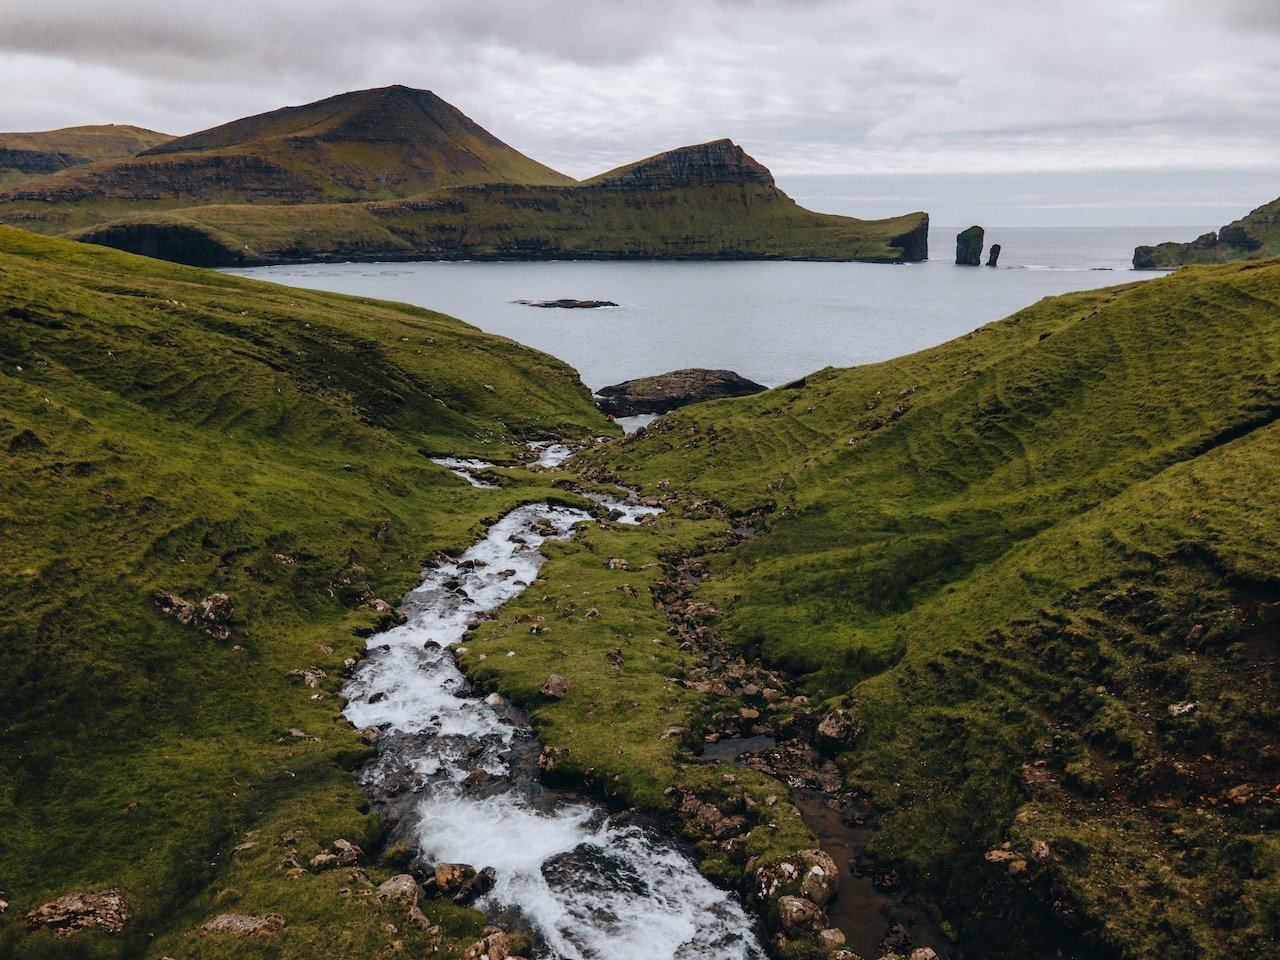   Skarðsáfossur Waterfall, Vágar, Faroe Islands (ISO 100, 4.5 mm,  f /2.8, 1/40 s)  